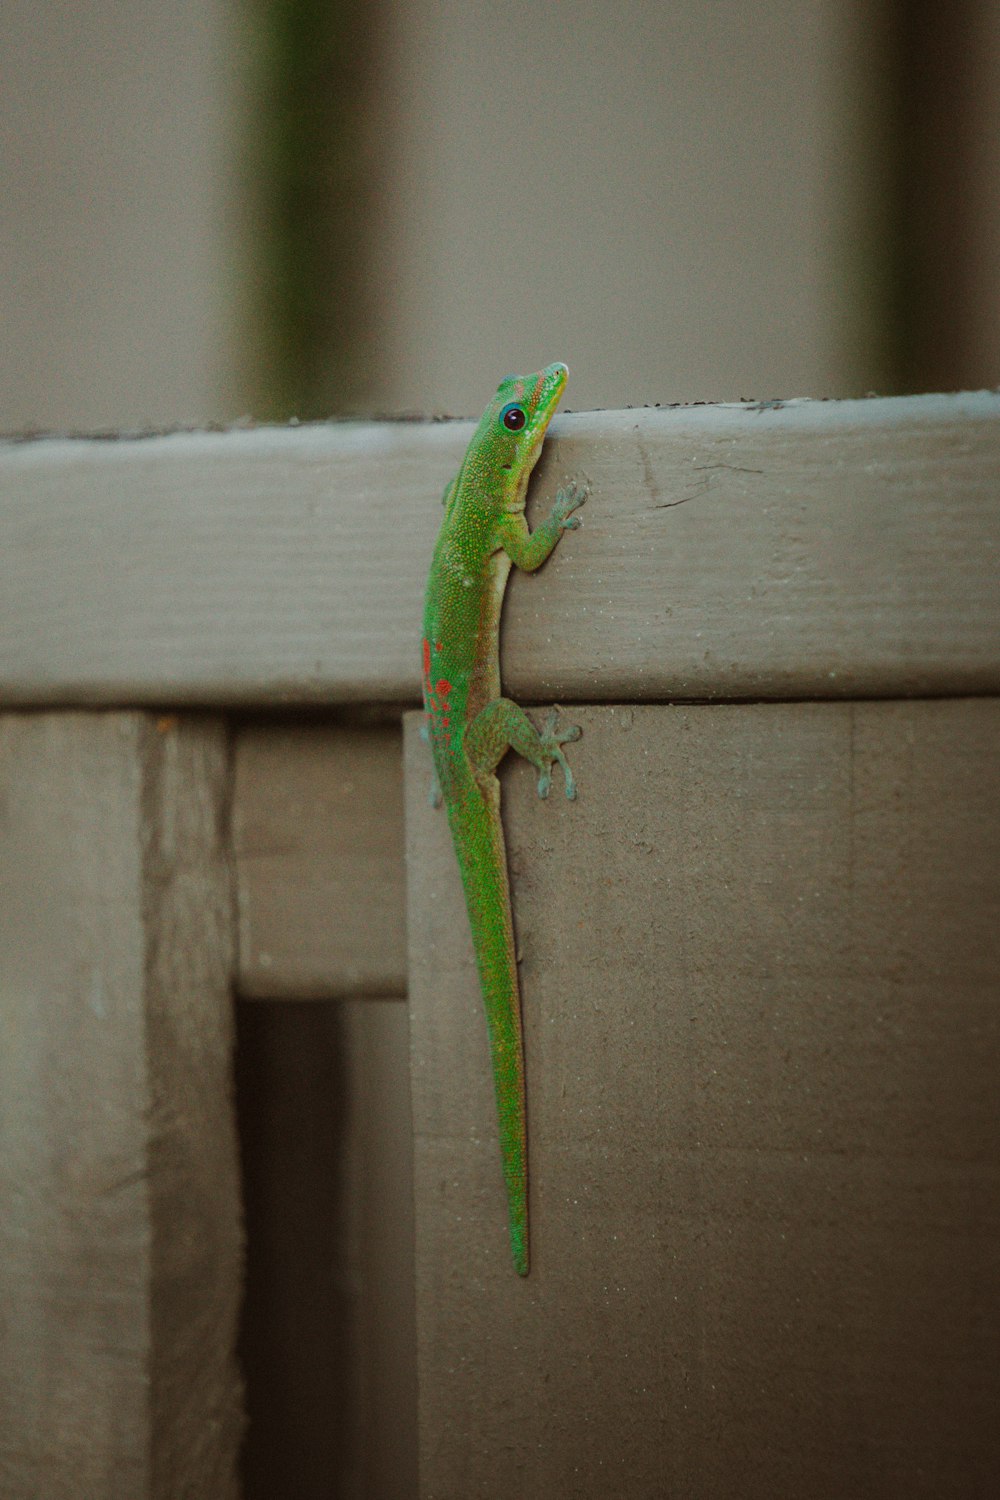 a green lizard on a wood surface